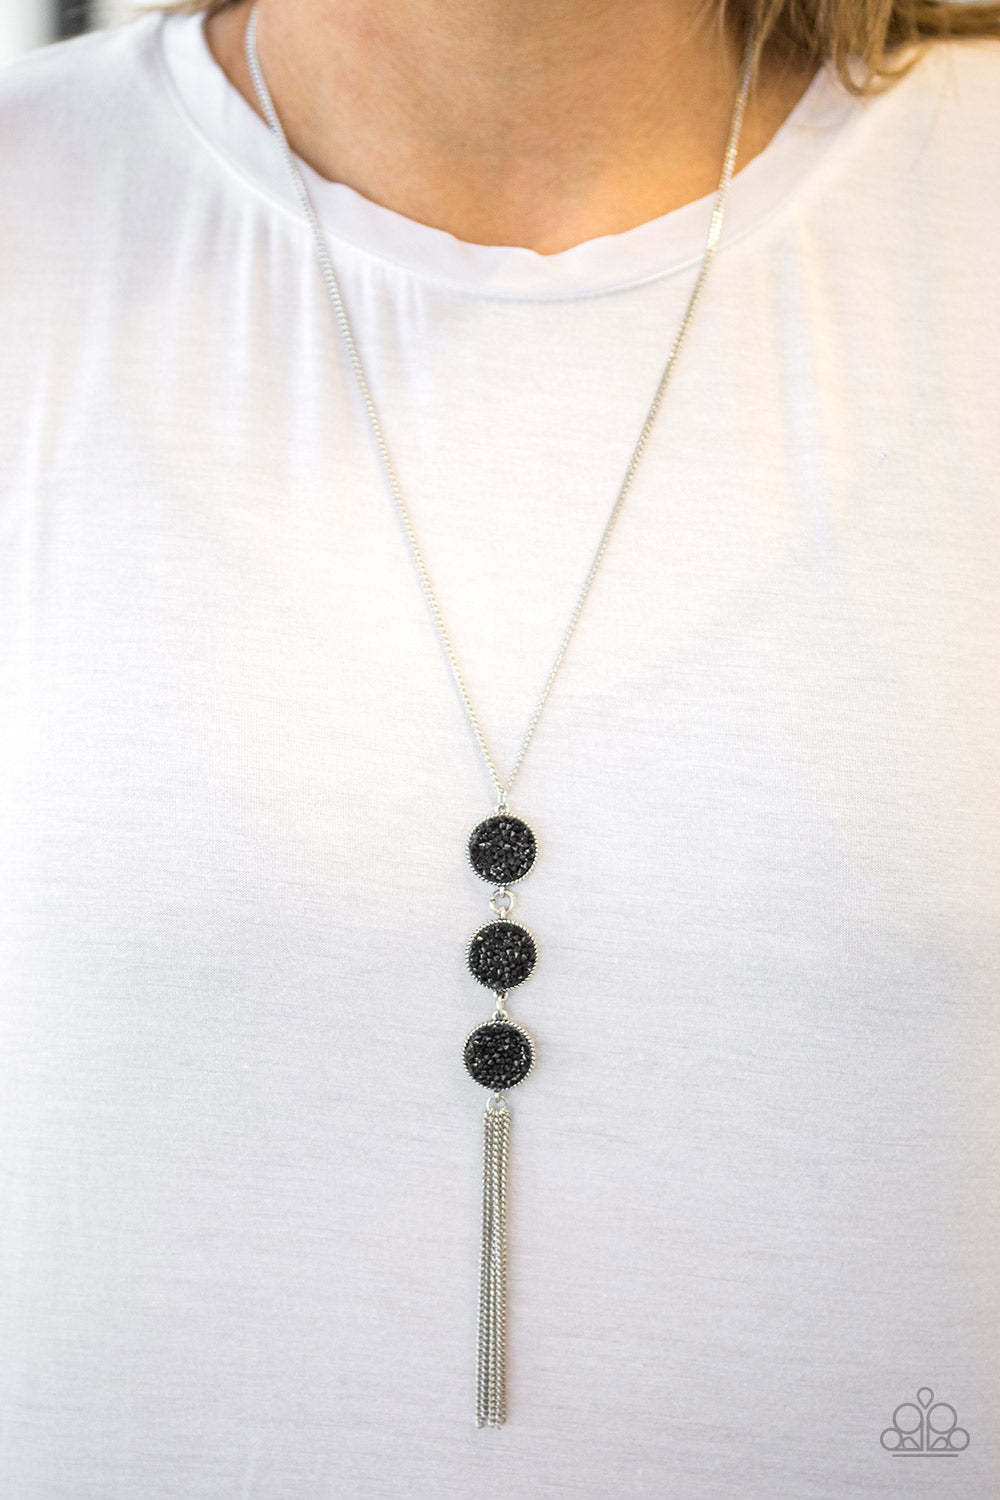 Triple Shimmer - Black Necklace Set - Princess Glam Shop